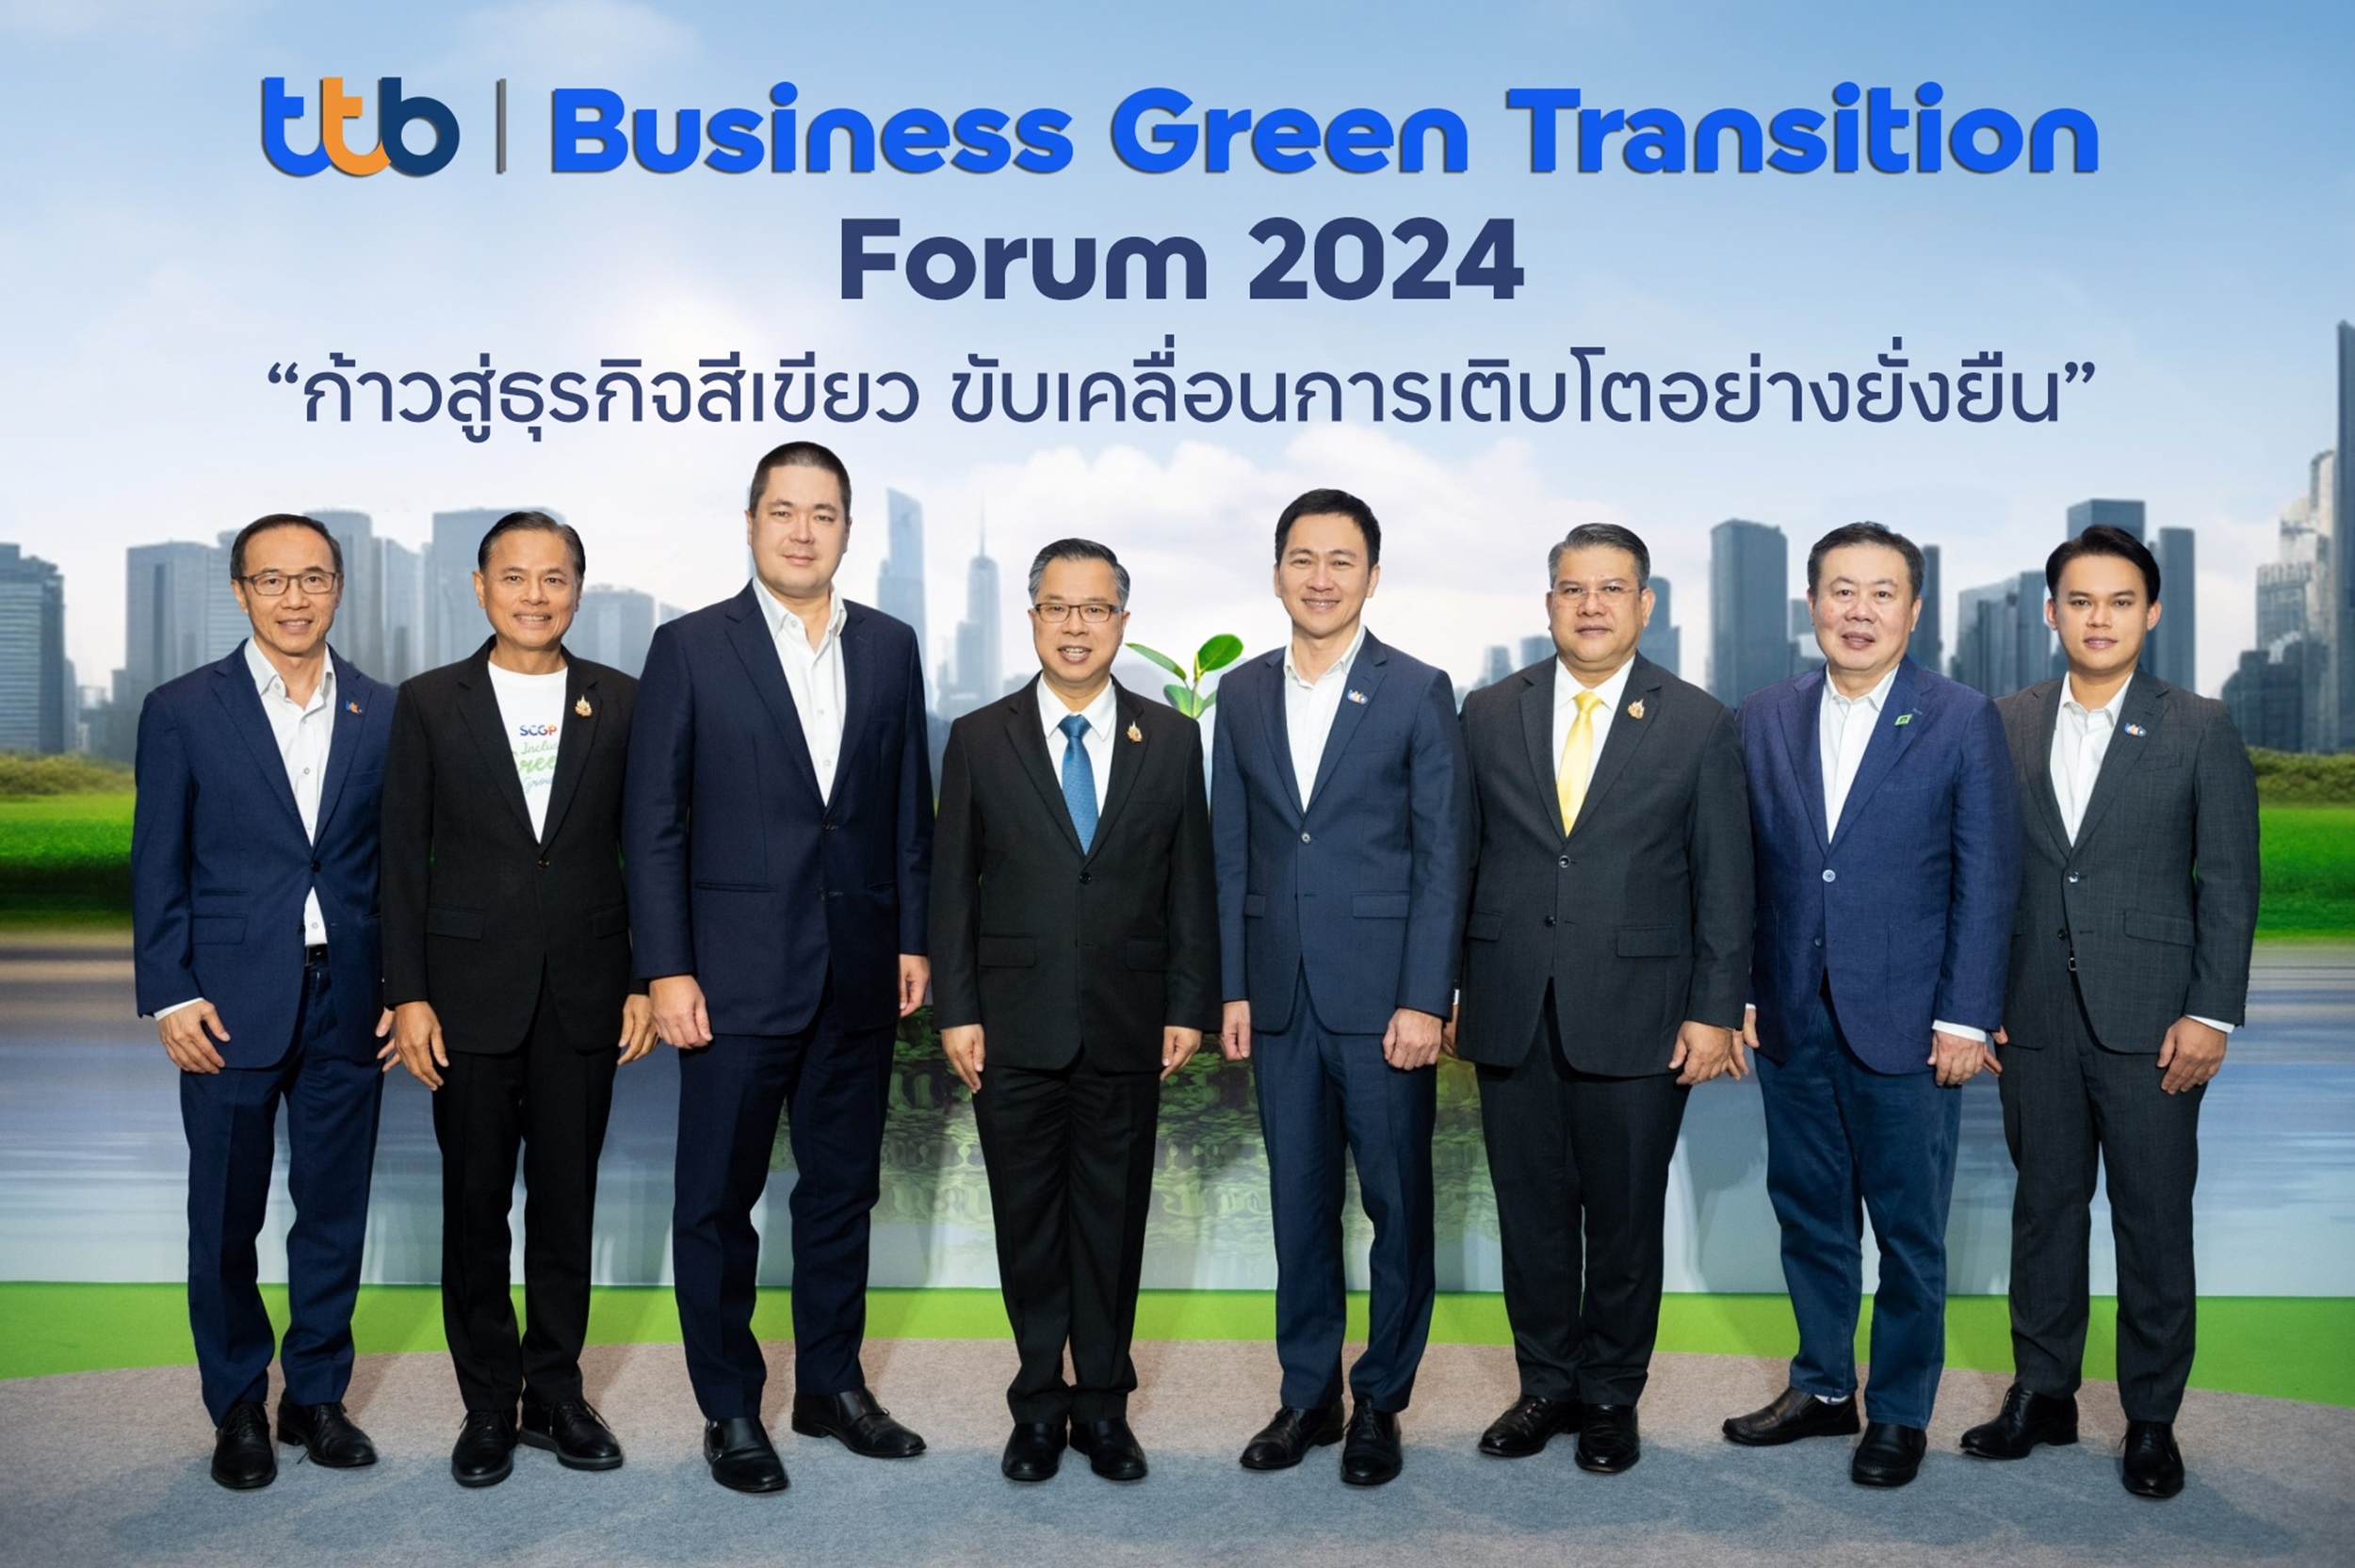 ทีทีบี จัดสัมมนาใหญ่  “ttb I Business Green Transition Forum 2024”  ร่วมผลักดันผู้ประกอบการไทย เปลี่ยนผ่านธุรกิจก้าวสู่องค์กรคาร์บอนต่ำอย่างยั่งยืน